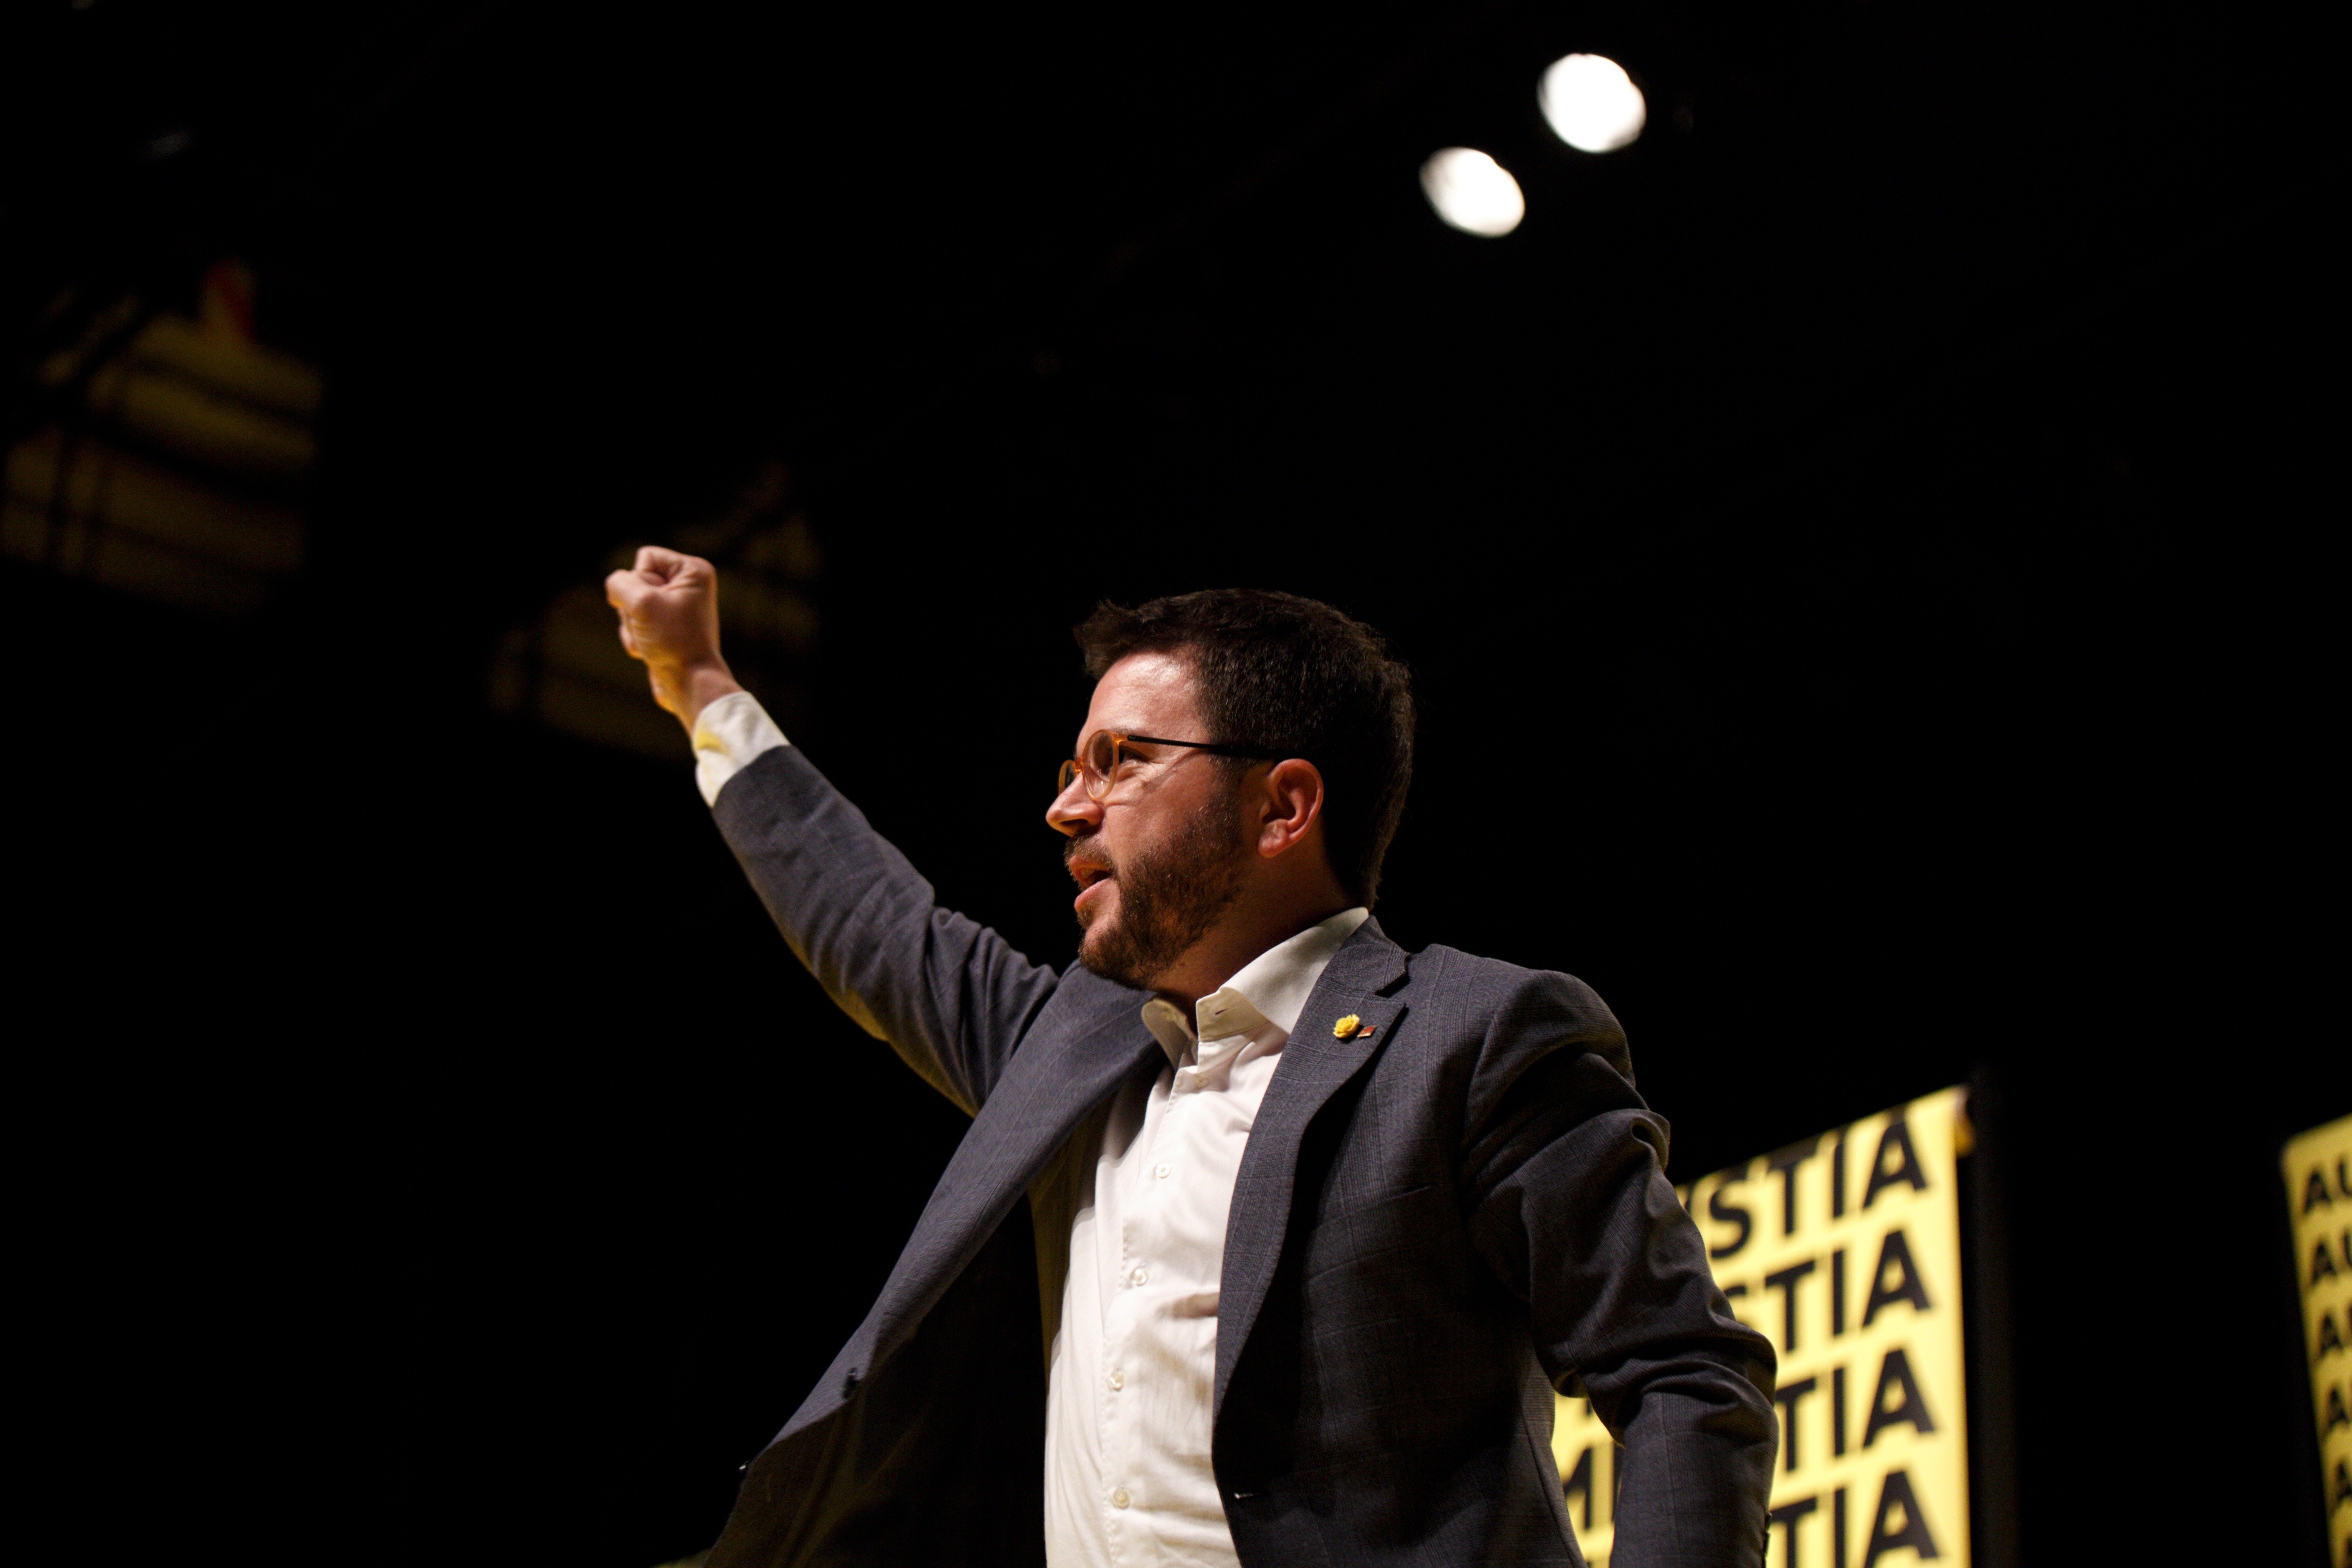 Las elecciones del 10-N, escenario de precampaña para las próximas catalanas